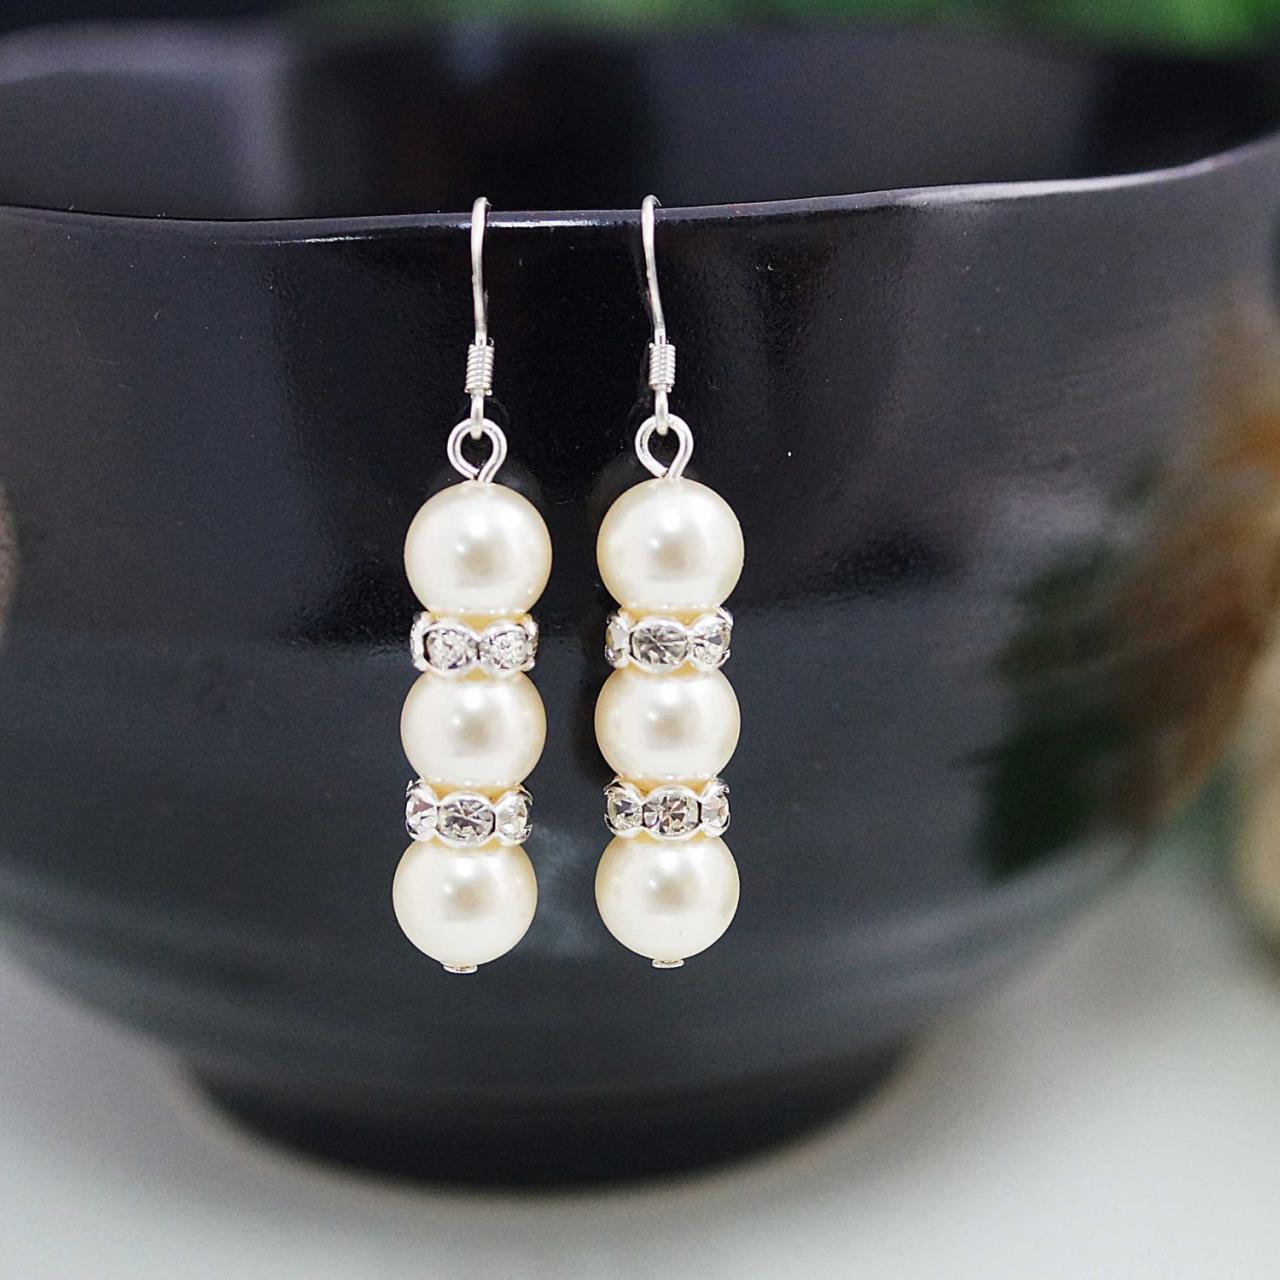 Sweet Crystal White Swarovski Pearls With Rhinestone Rondelles Bridal Bridesmaid Earrings